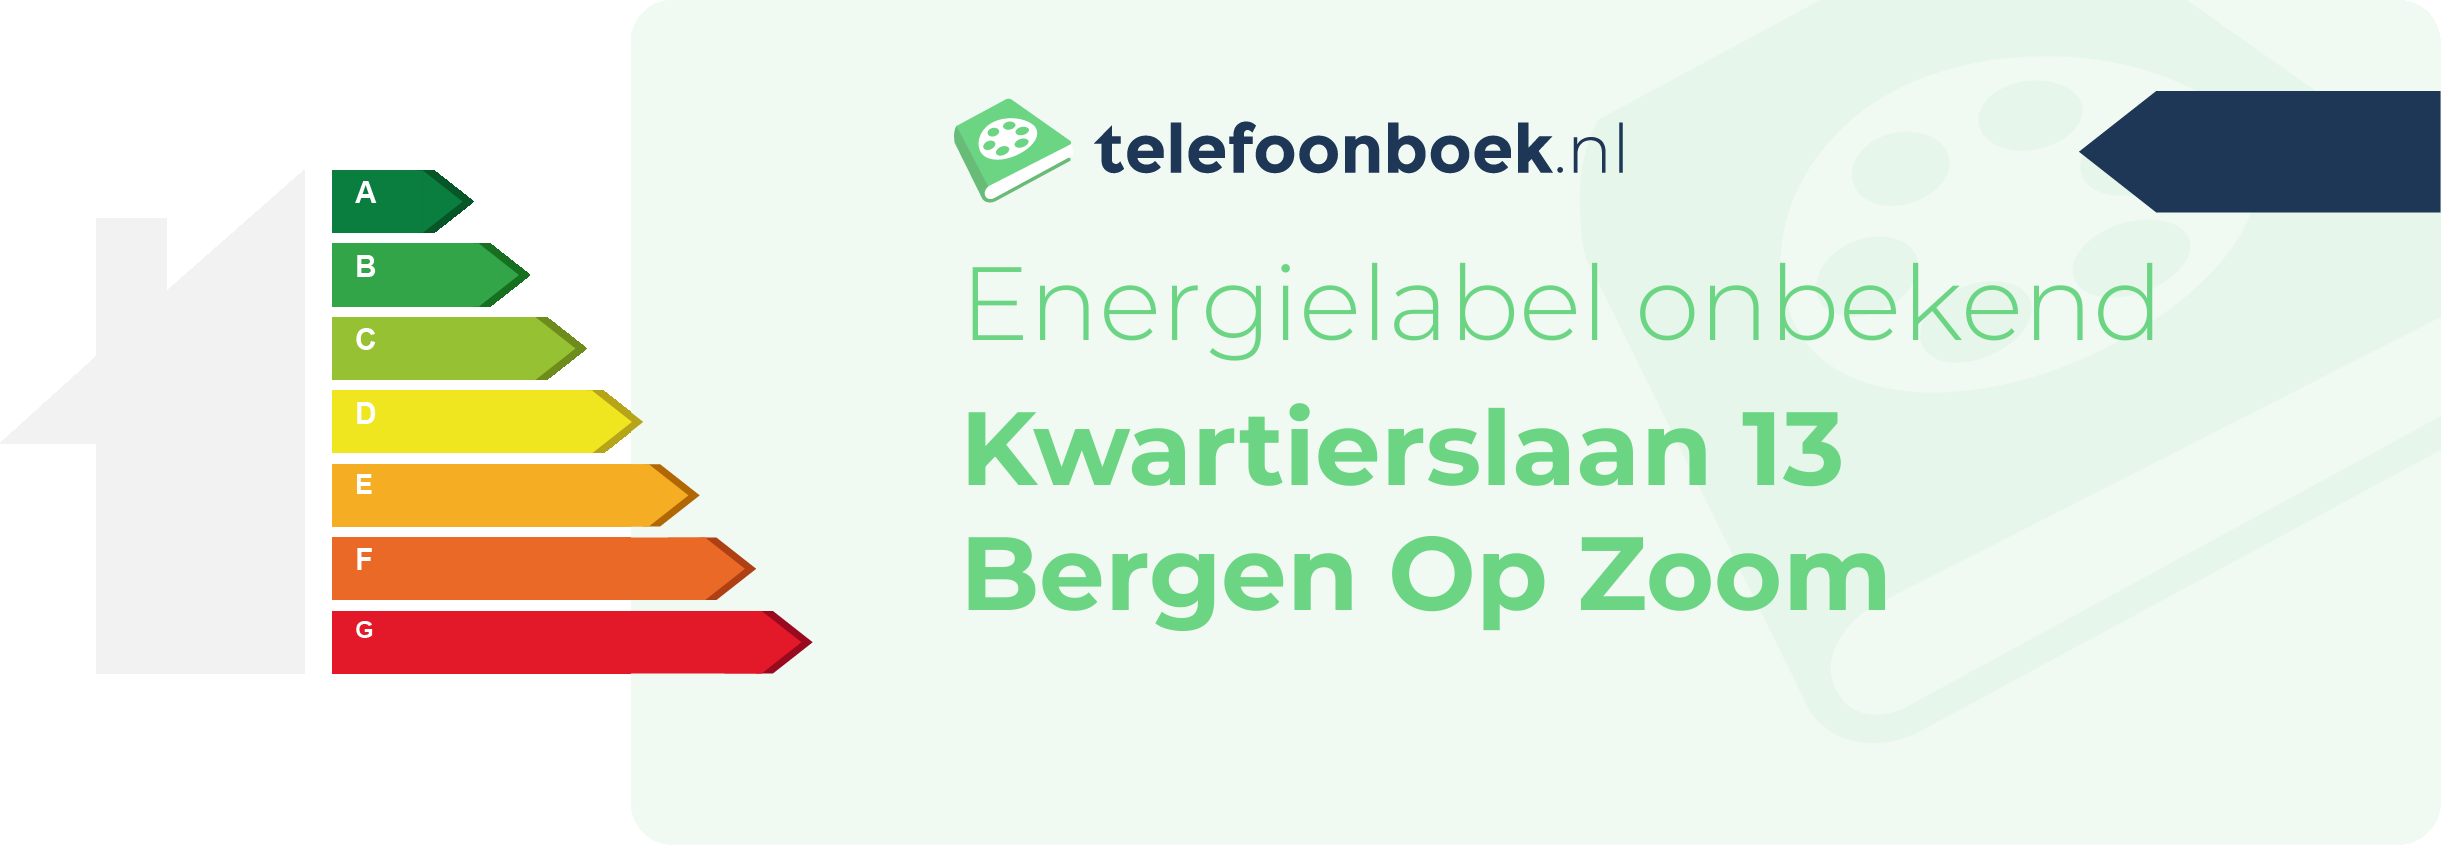 Energielabel Kwartierslaan 13 Bergen Op Zoom